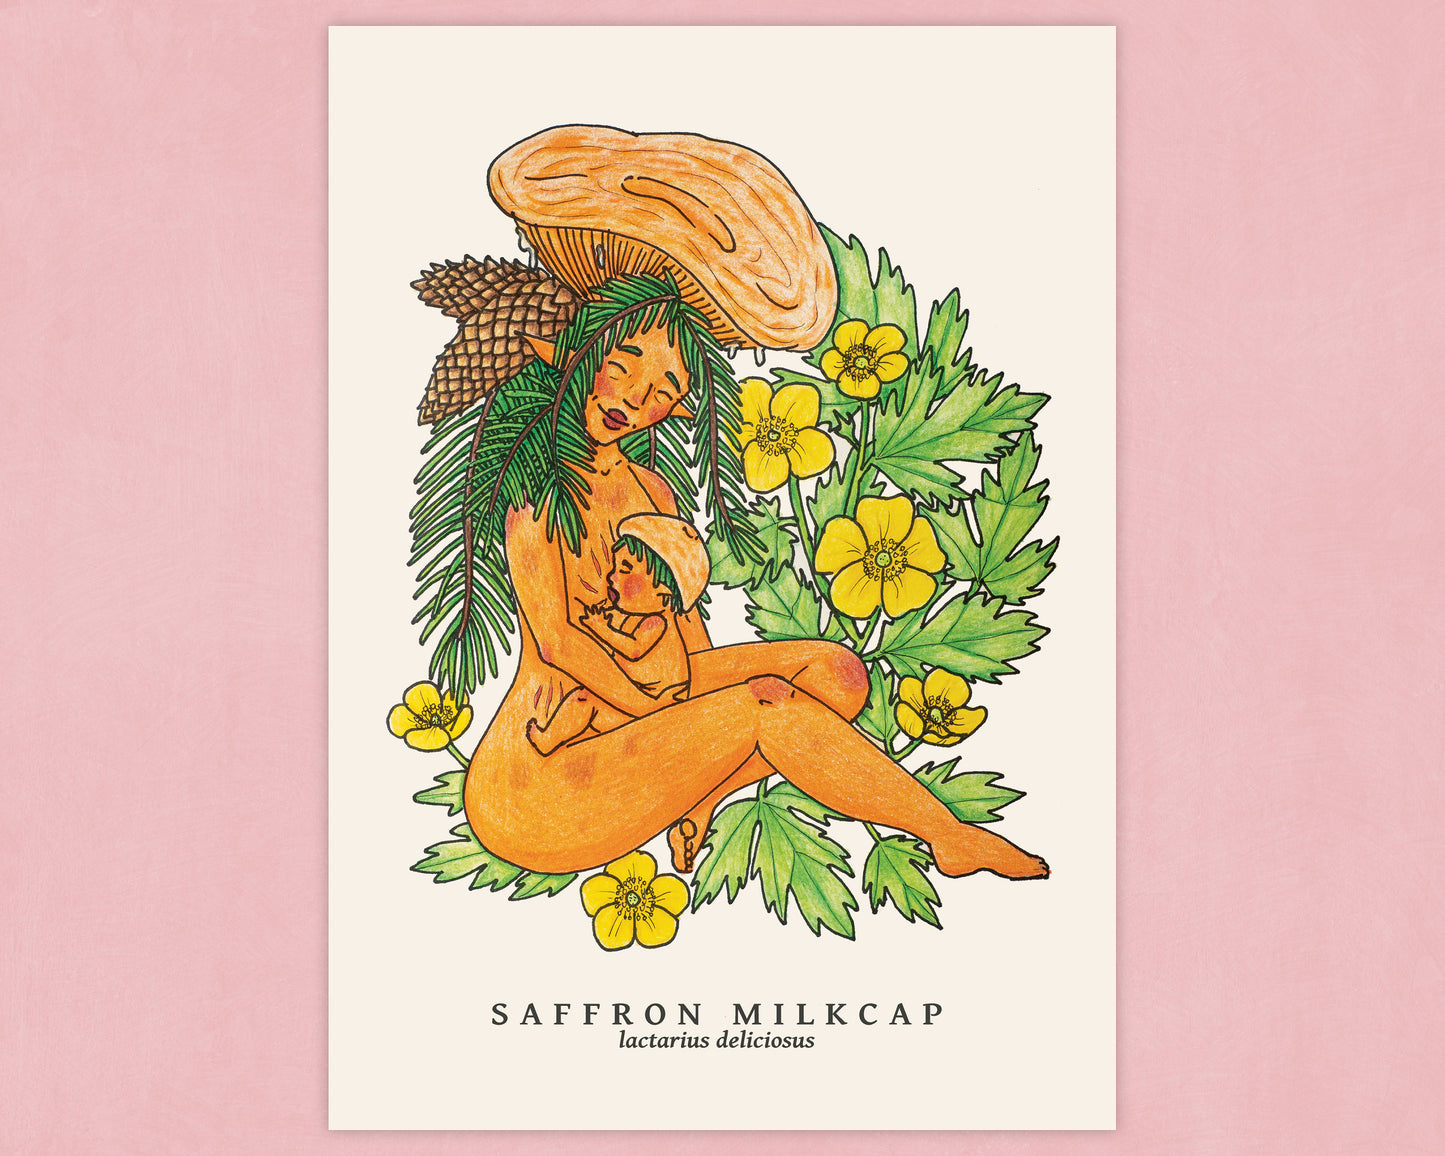 Saffron Milkcap